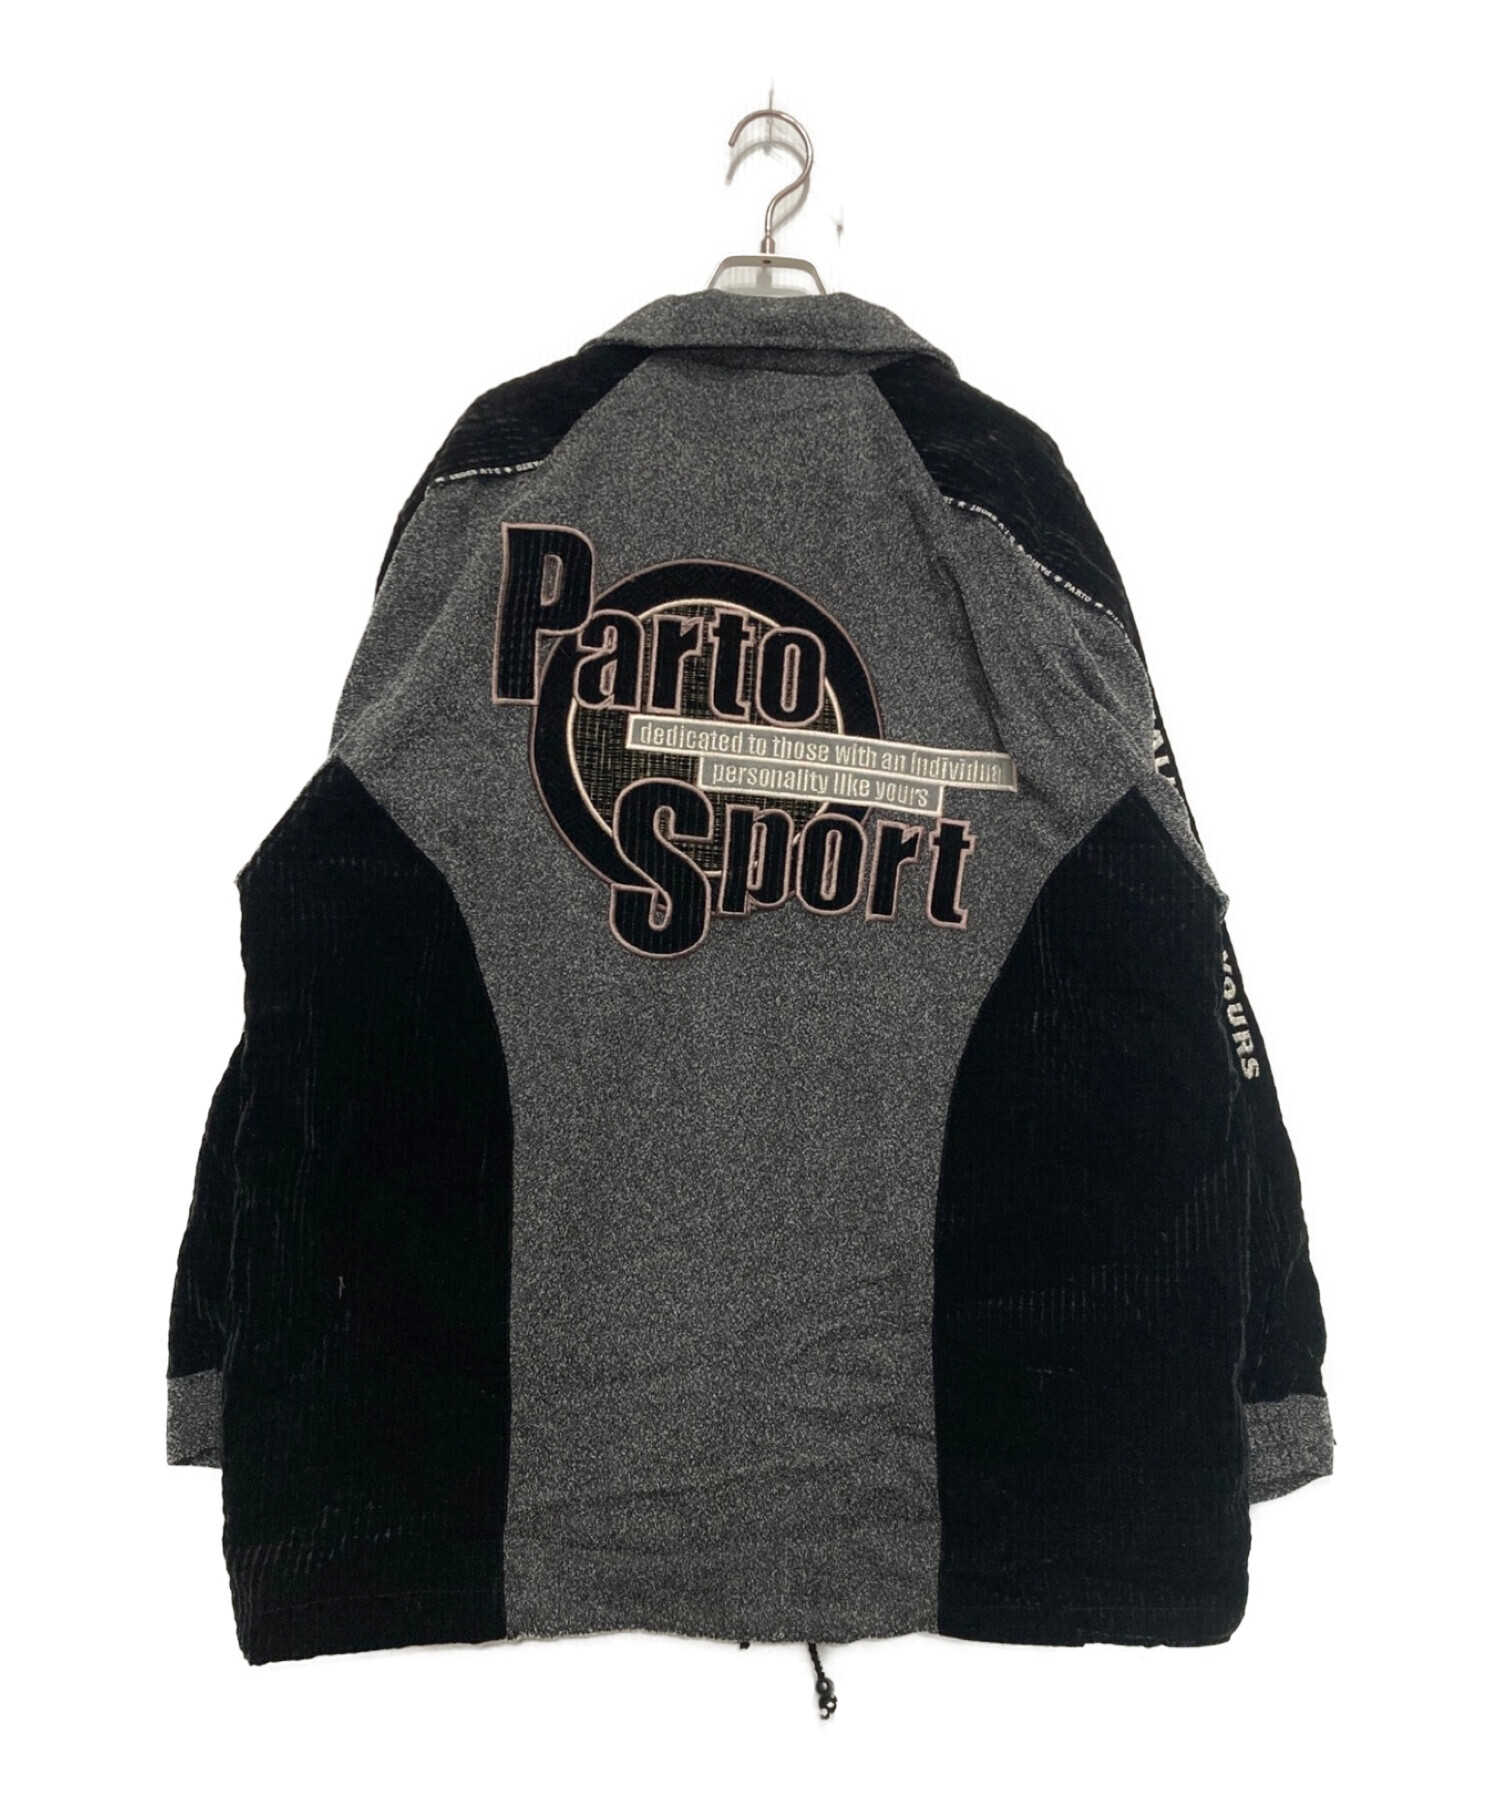 Parto sport (パルトスポーツ) セットアップ グレー サイズ:Free